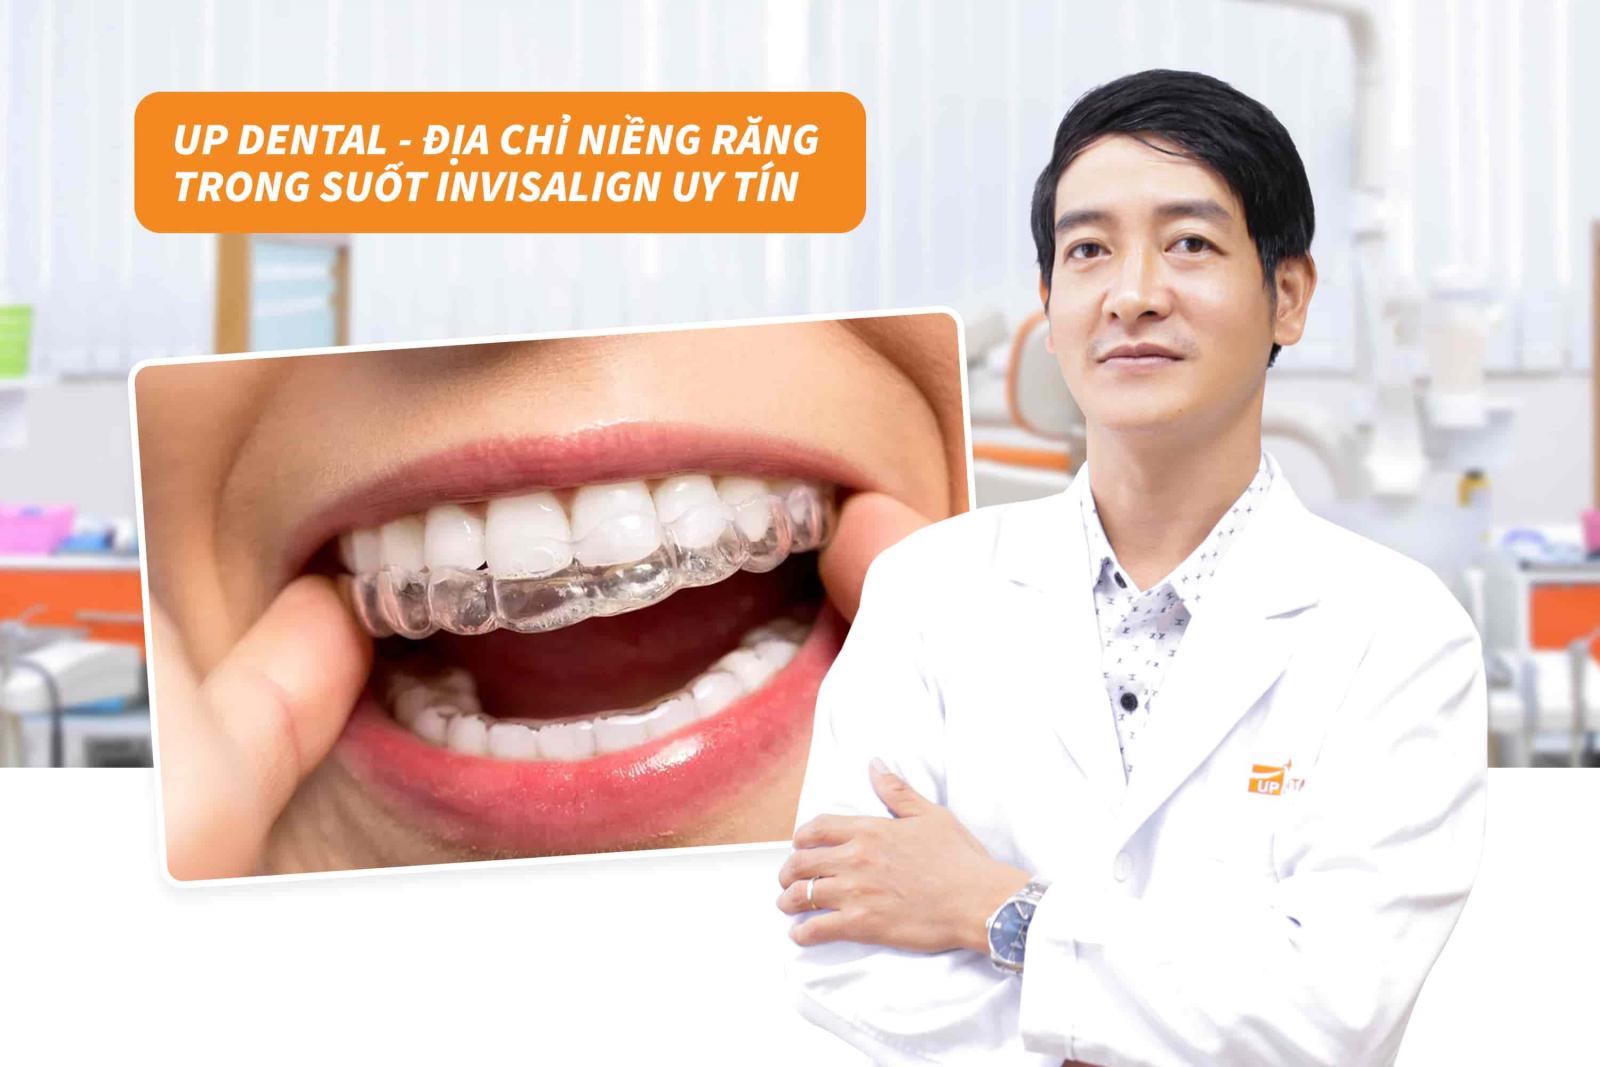 Up Dental - Địa chỉ niềng răng trong suốt Invisalign uy tín